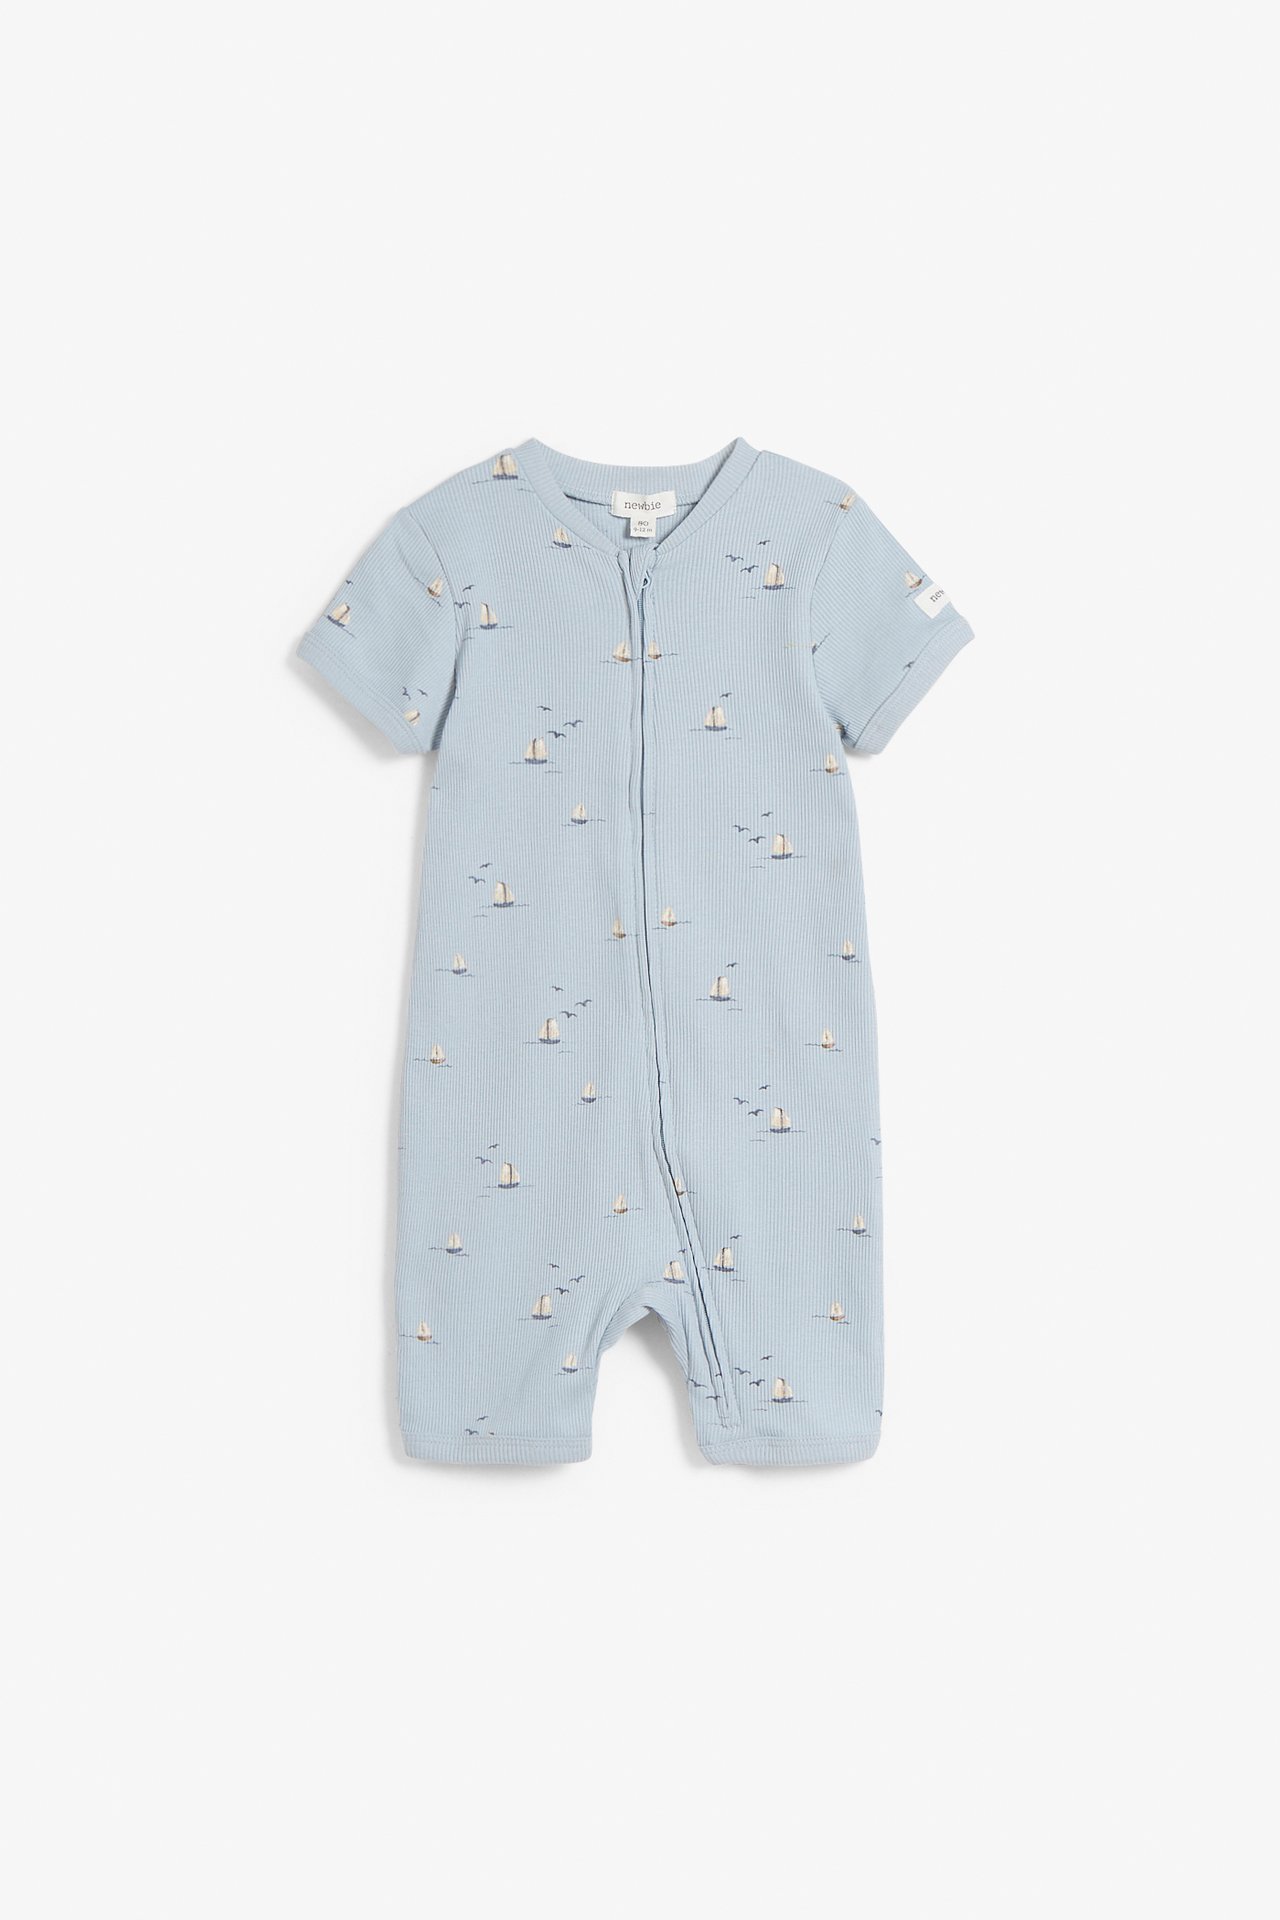 Piżama we wzory na całej powierzchni, dla niemowląt